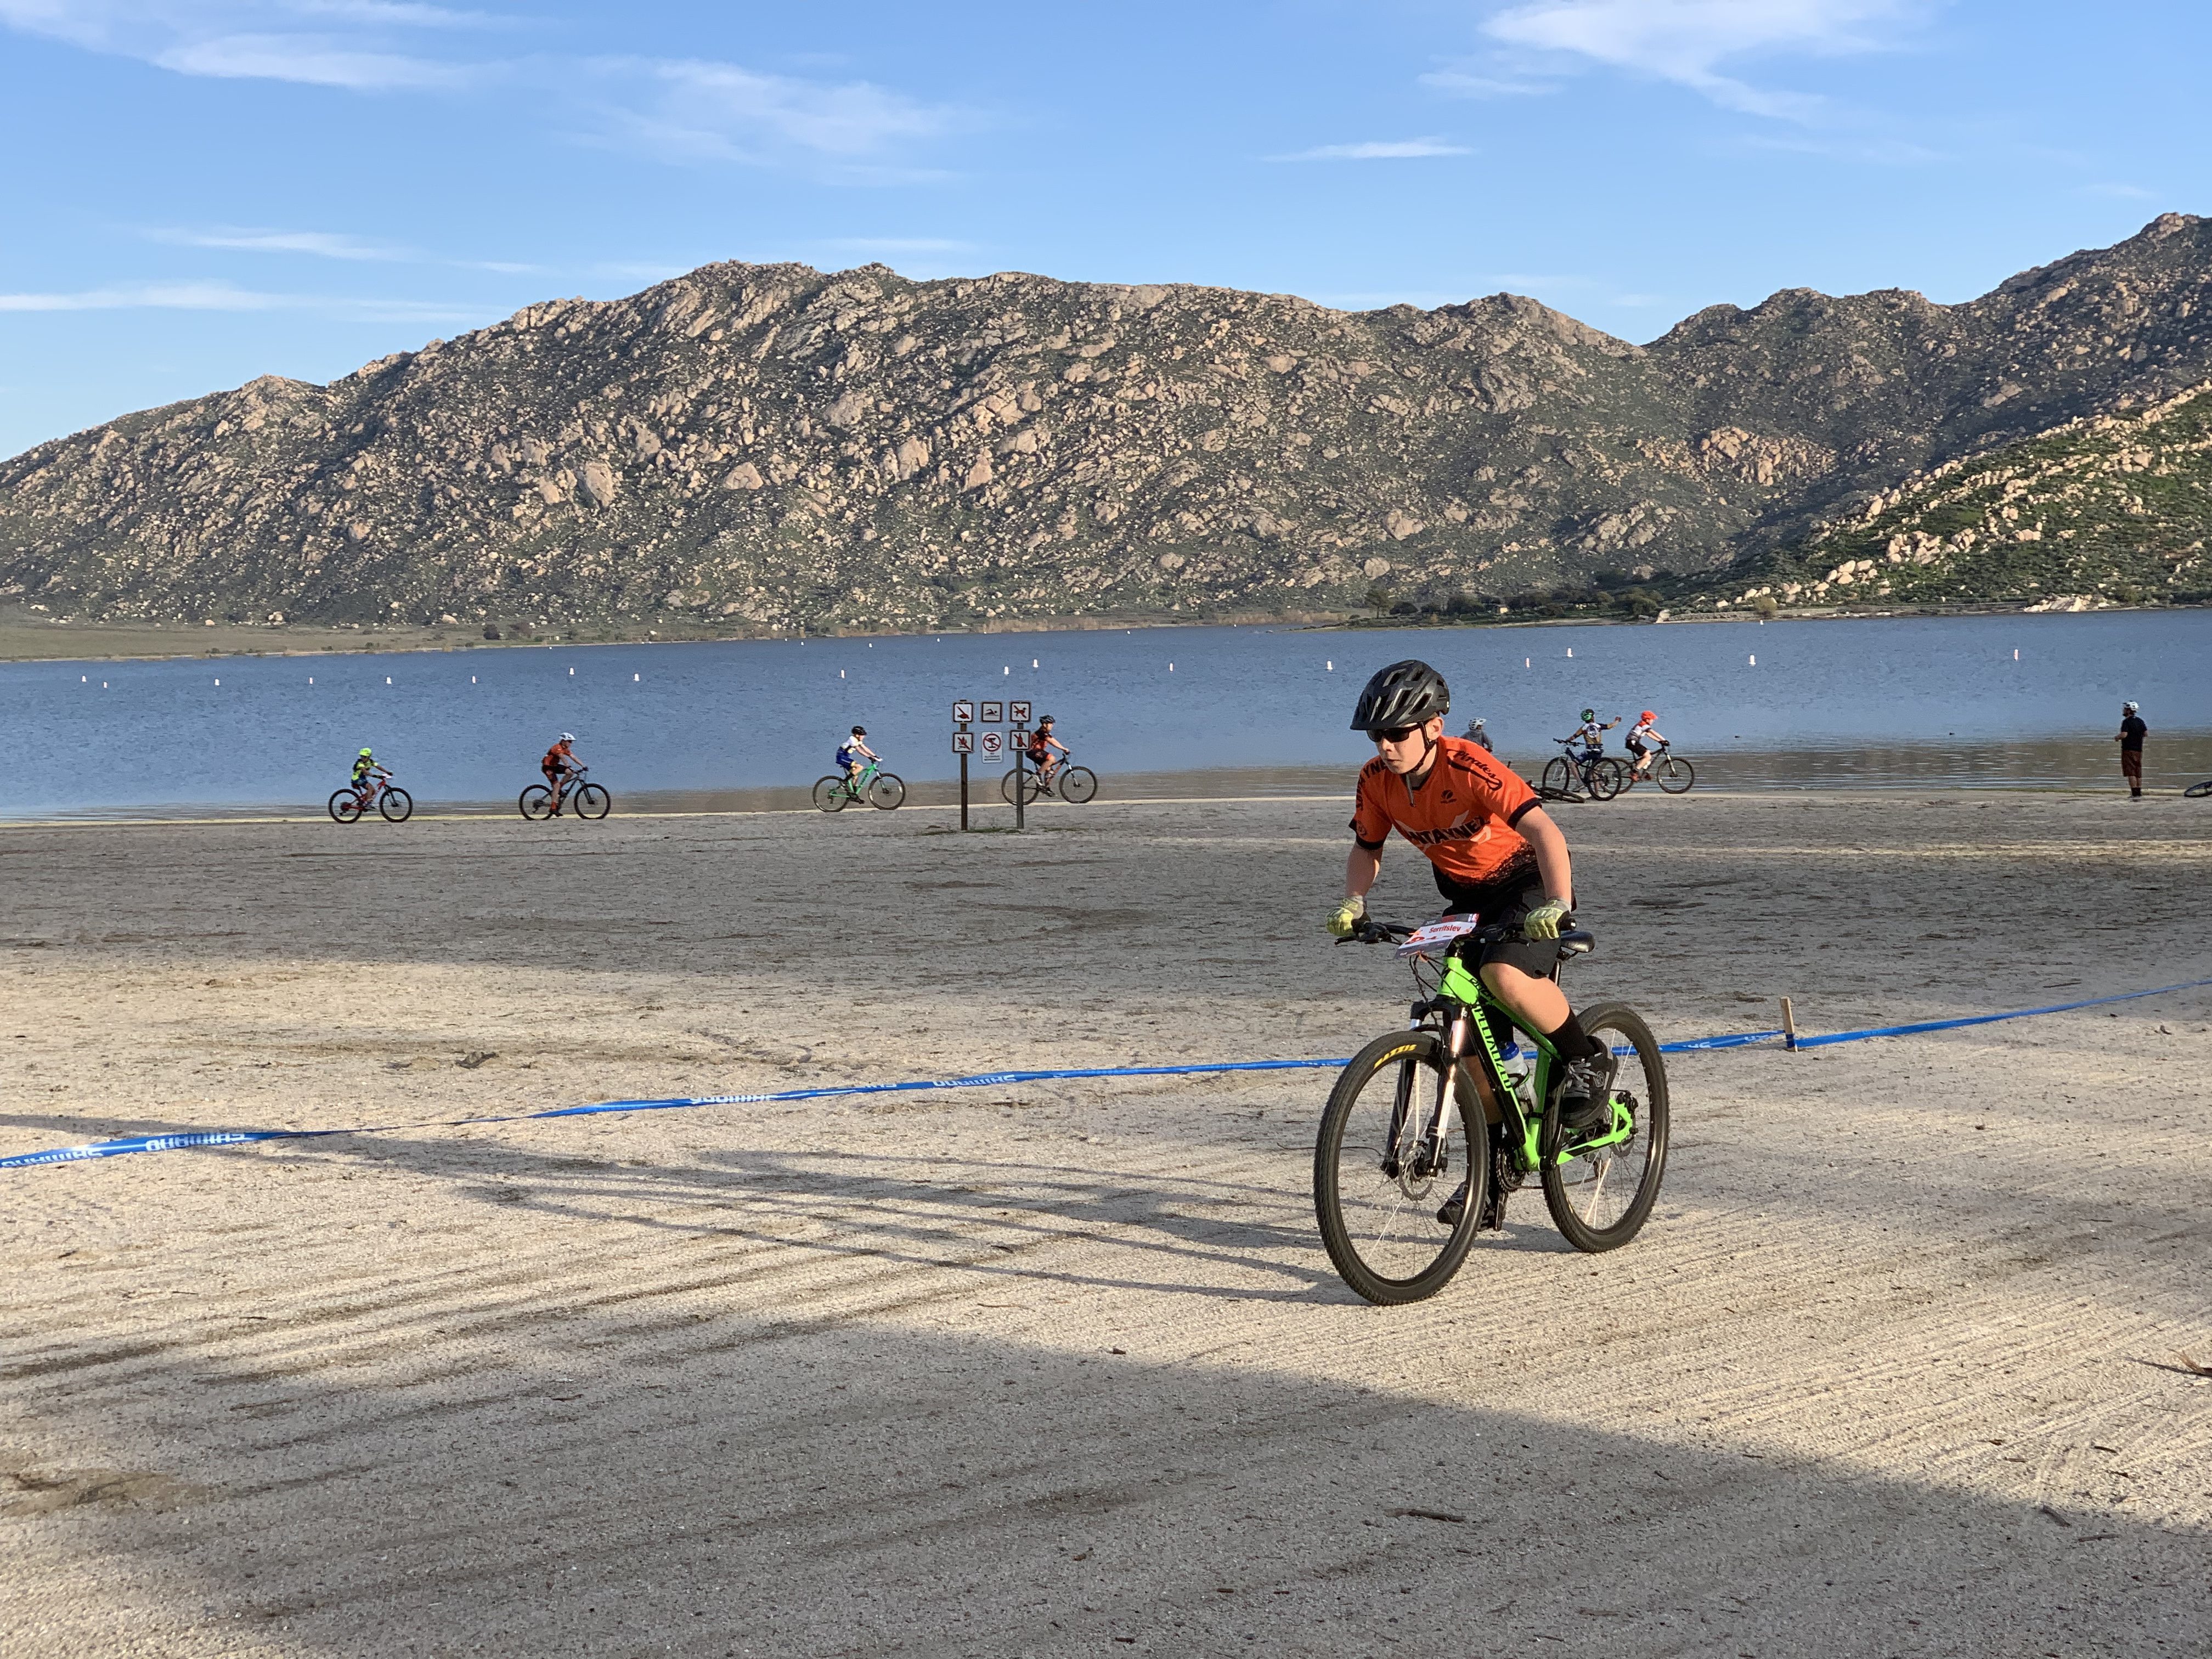 Local mountain bikers race at Lake Perris